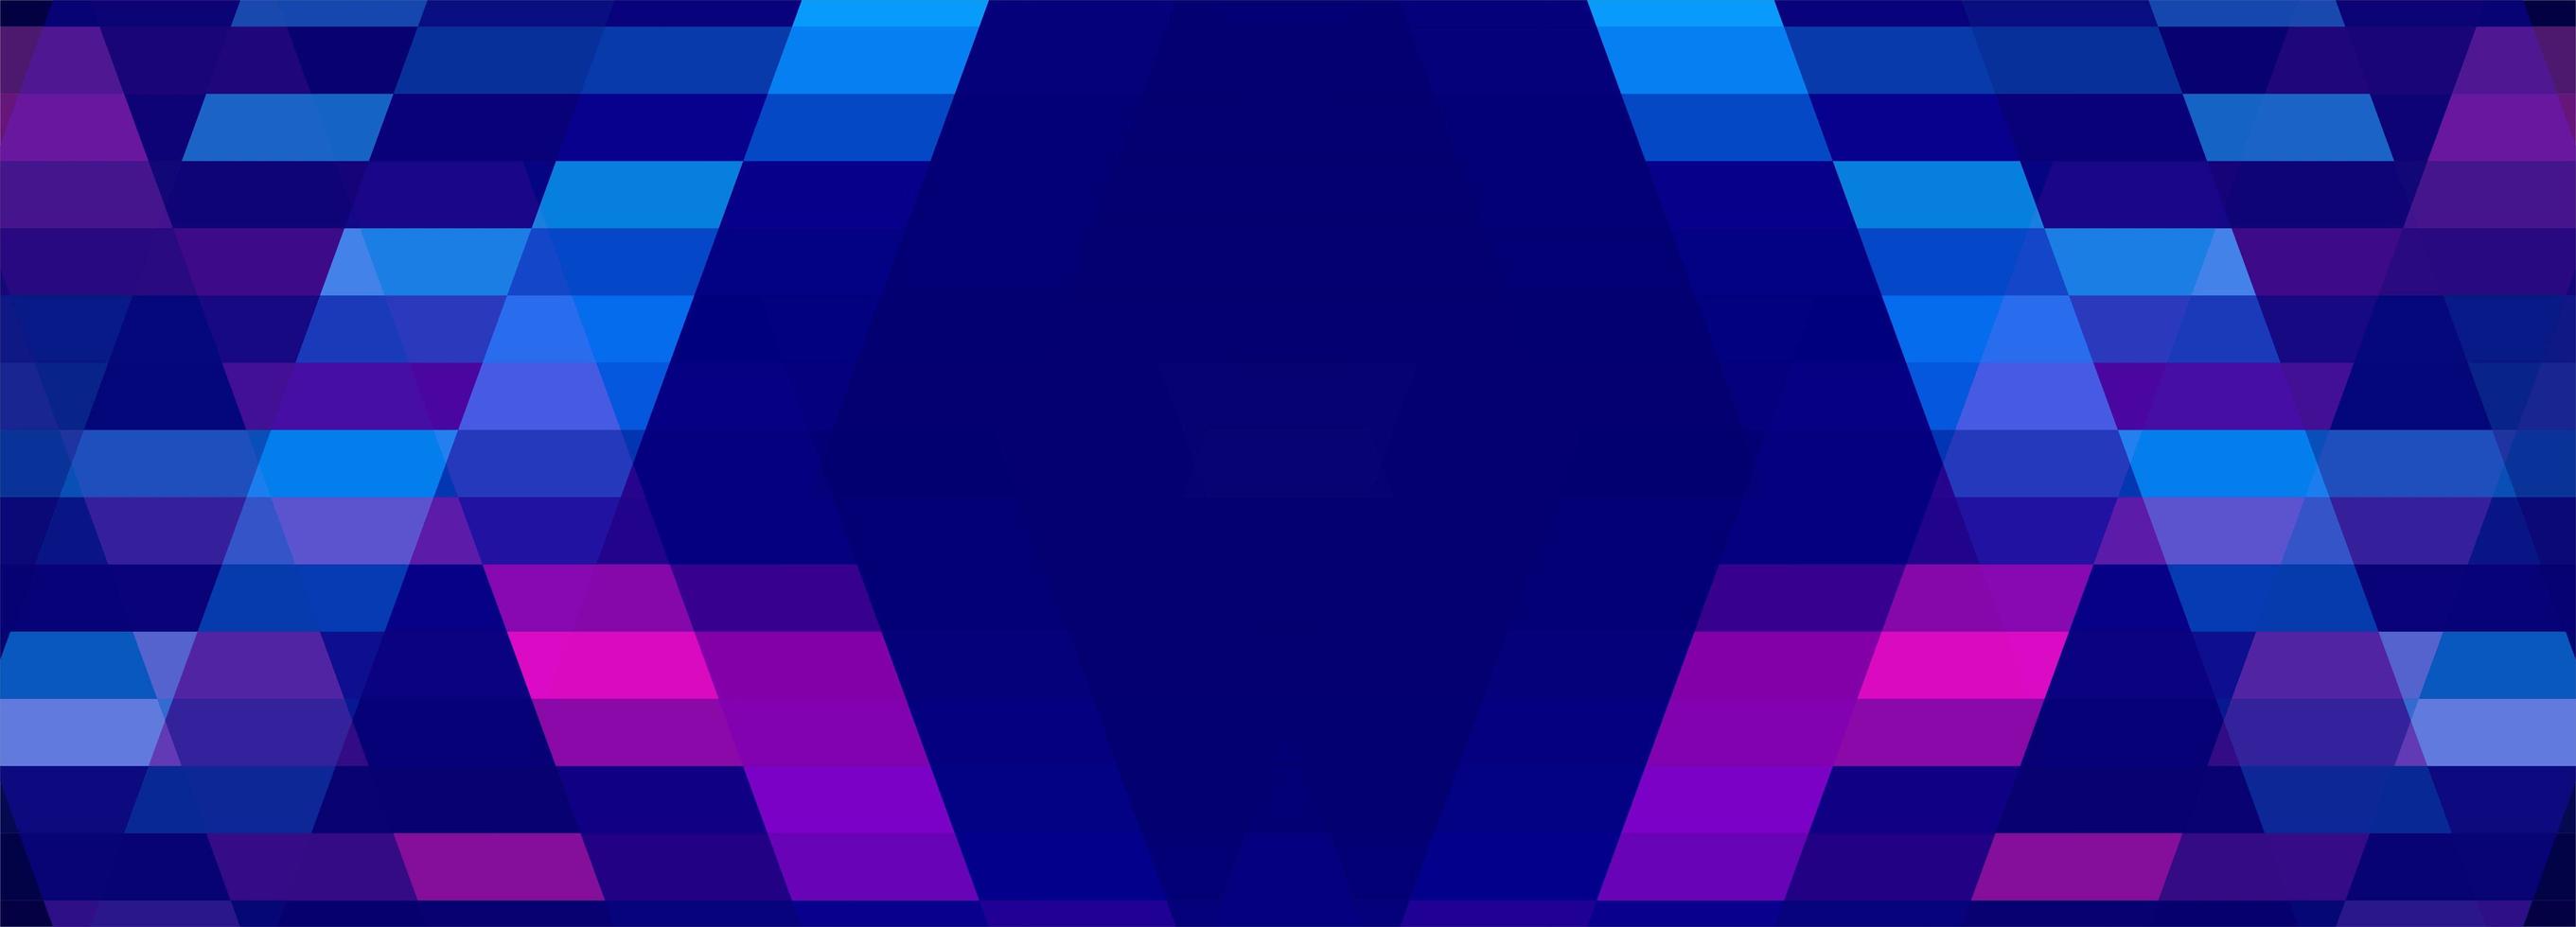 banner geométrico azul e rosa vetor